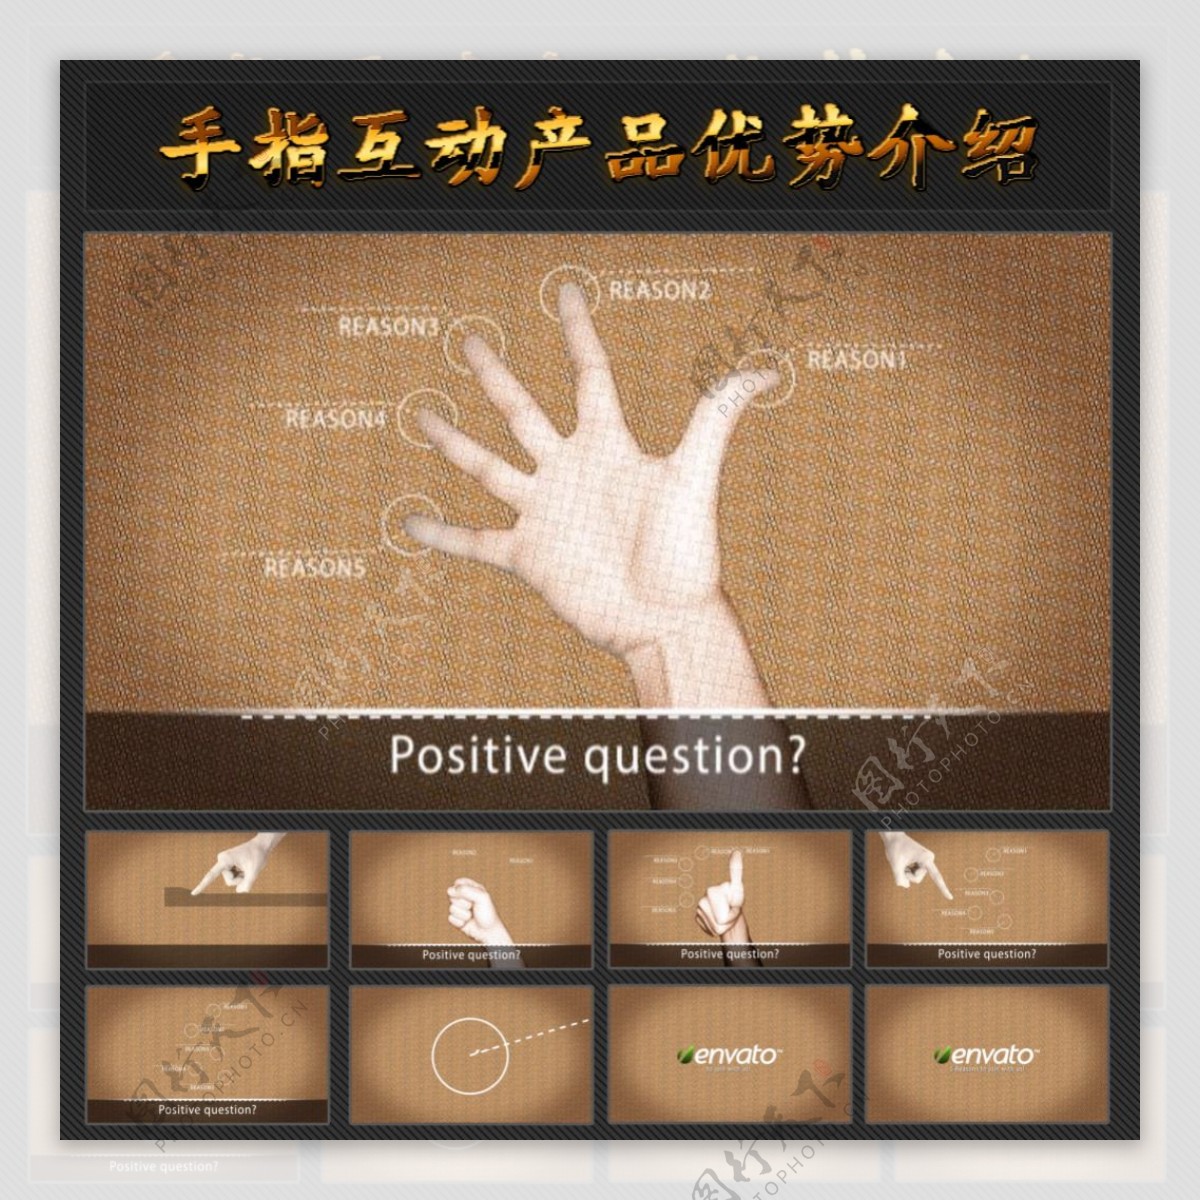 手指互动产品优势介绍AE模板图片